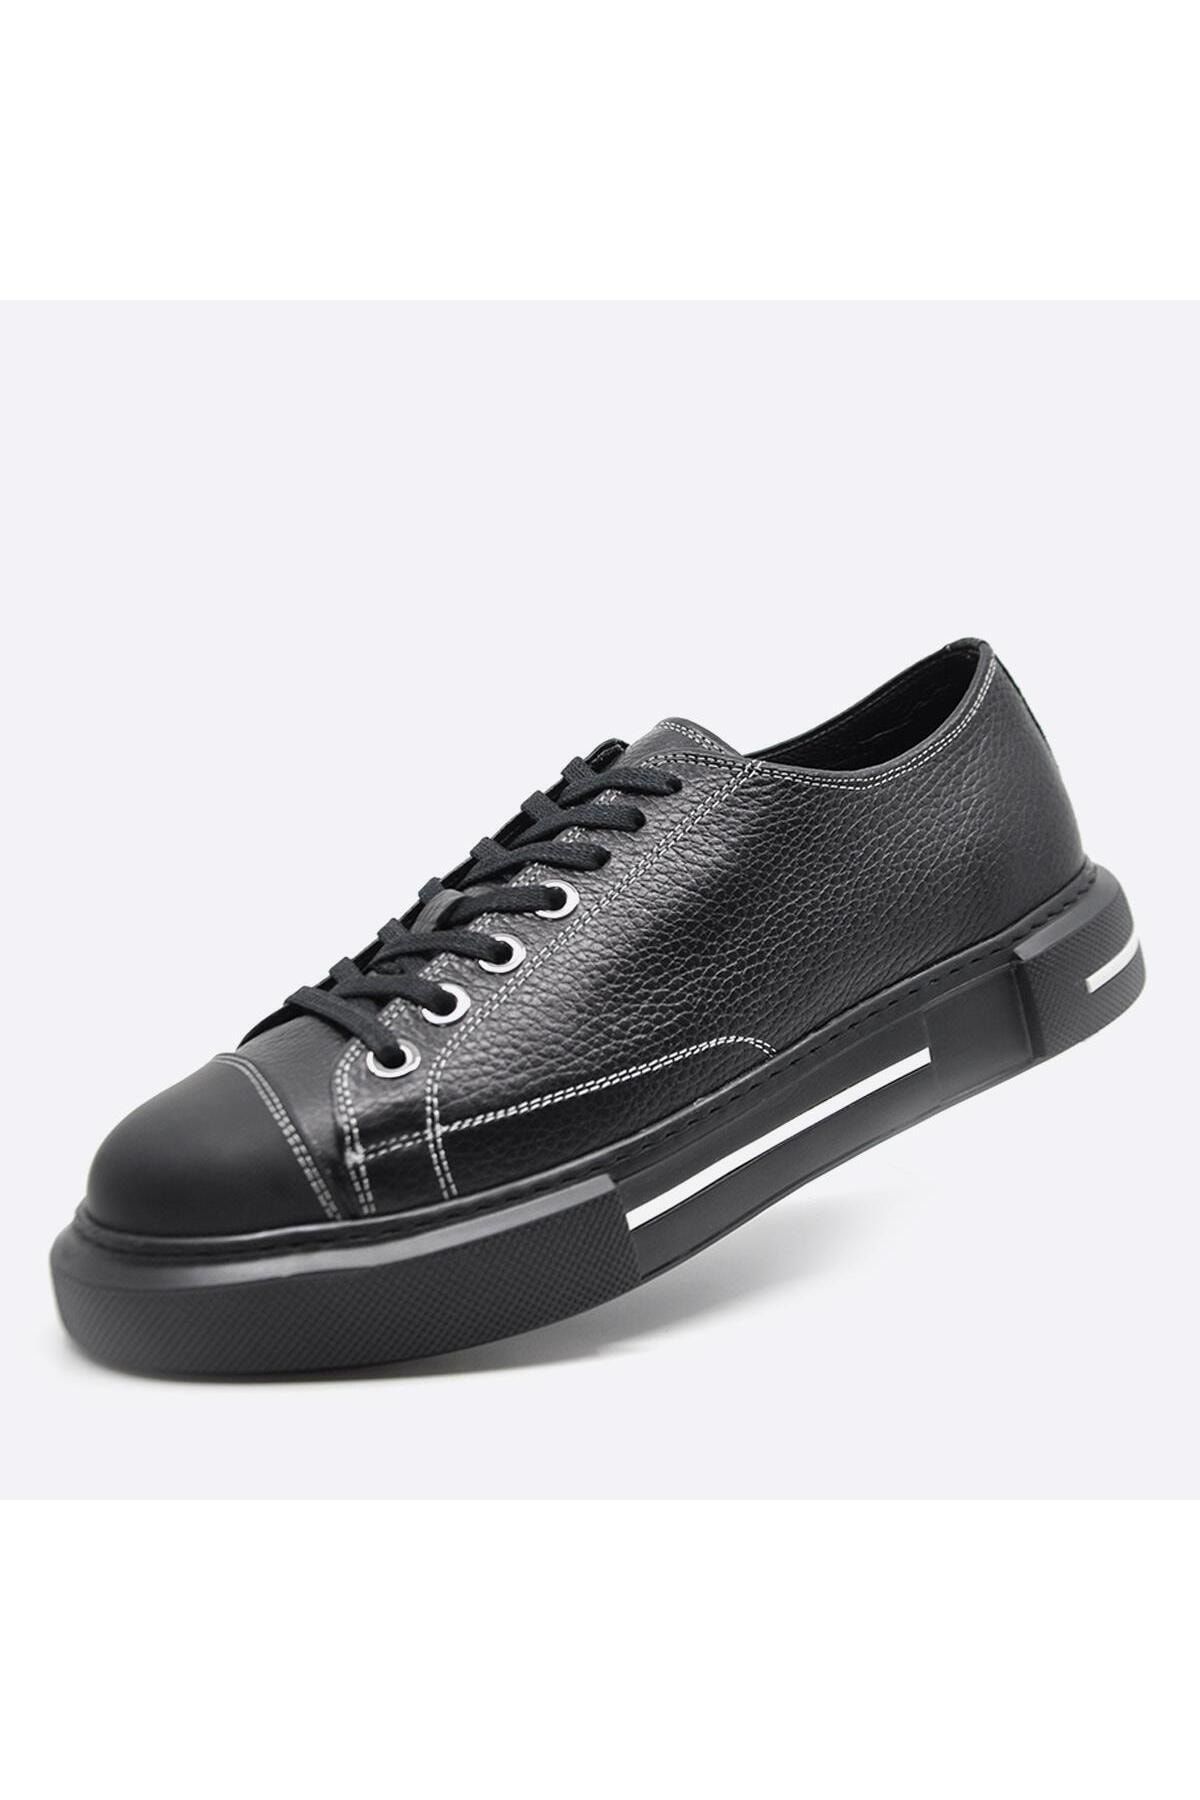 Fosco Hakiki Deri Sneaker Erkek Ayakkabı Siyah Siyah 9901